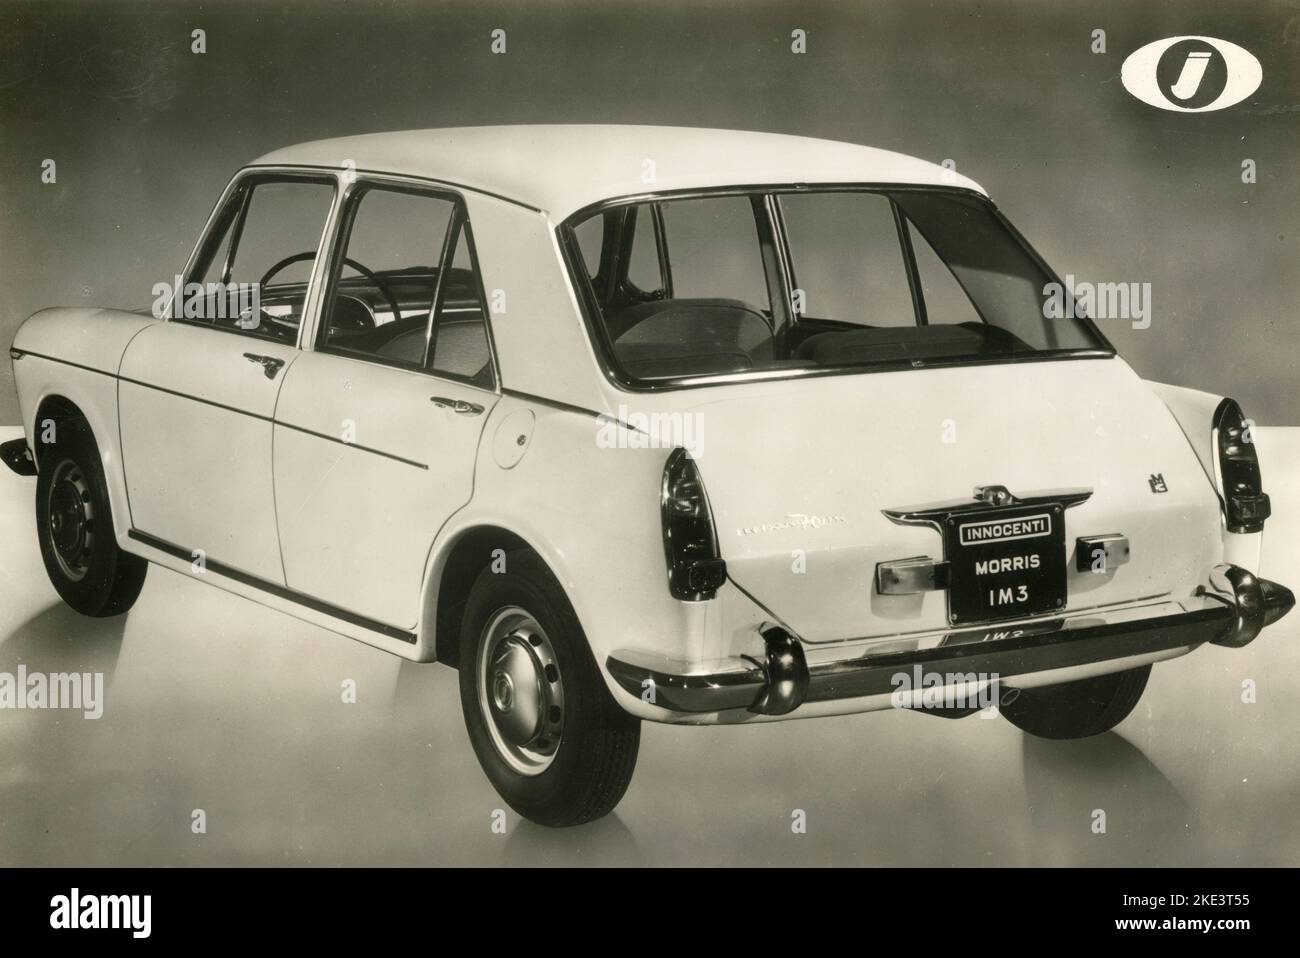 Innocenti Morris IM3 car, Italie 1967 Banque D'Images